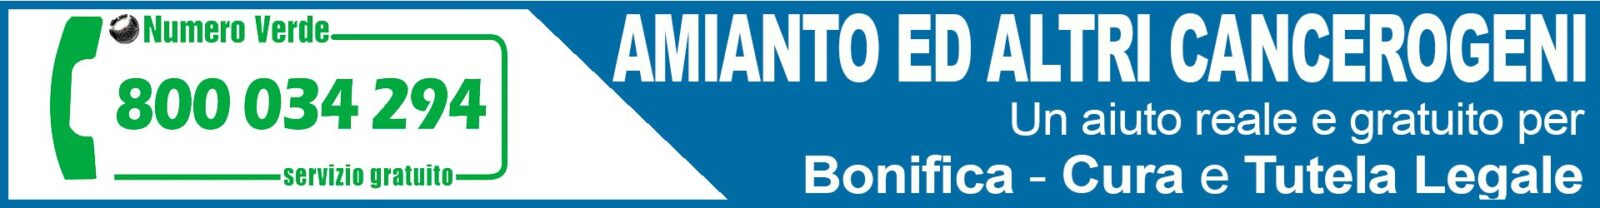 Osservatorio Nazionale Amianto Trentino Alto Adige